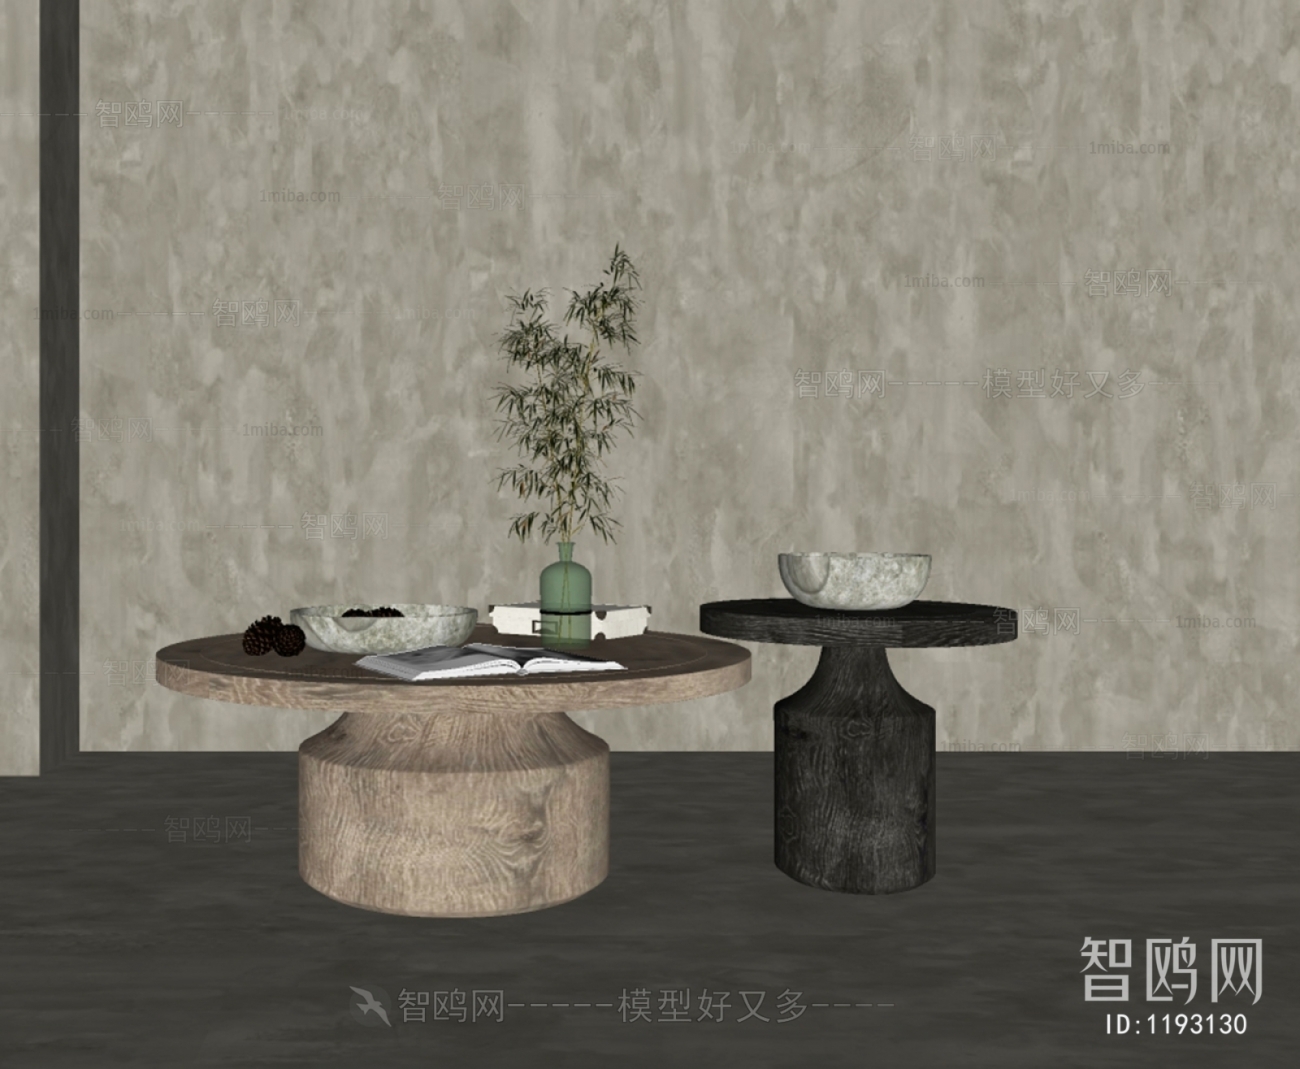 Modern Wabi-sabi Style Coffee Table